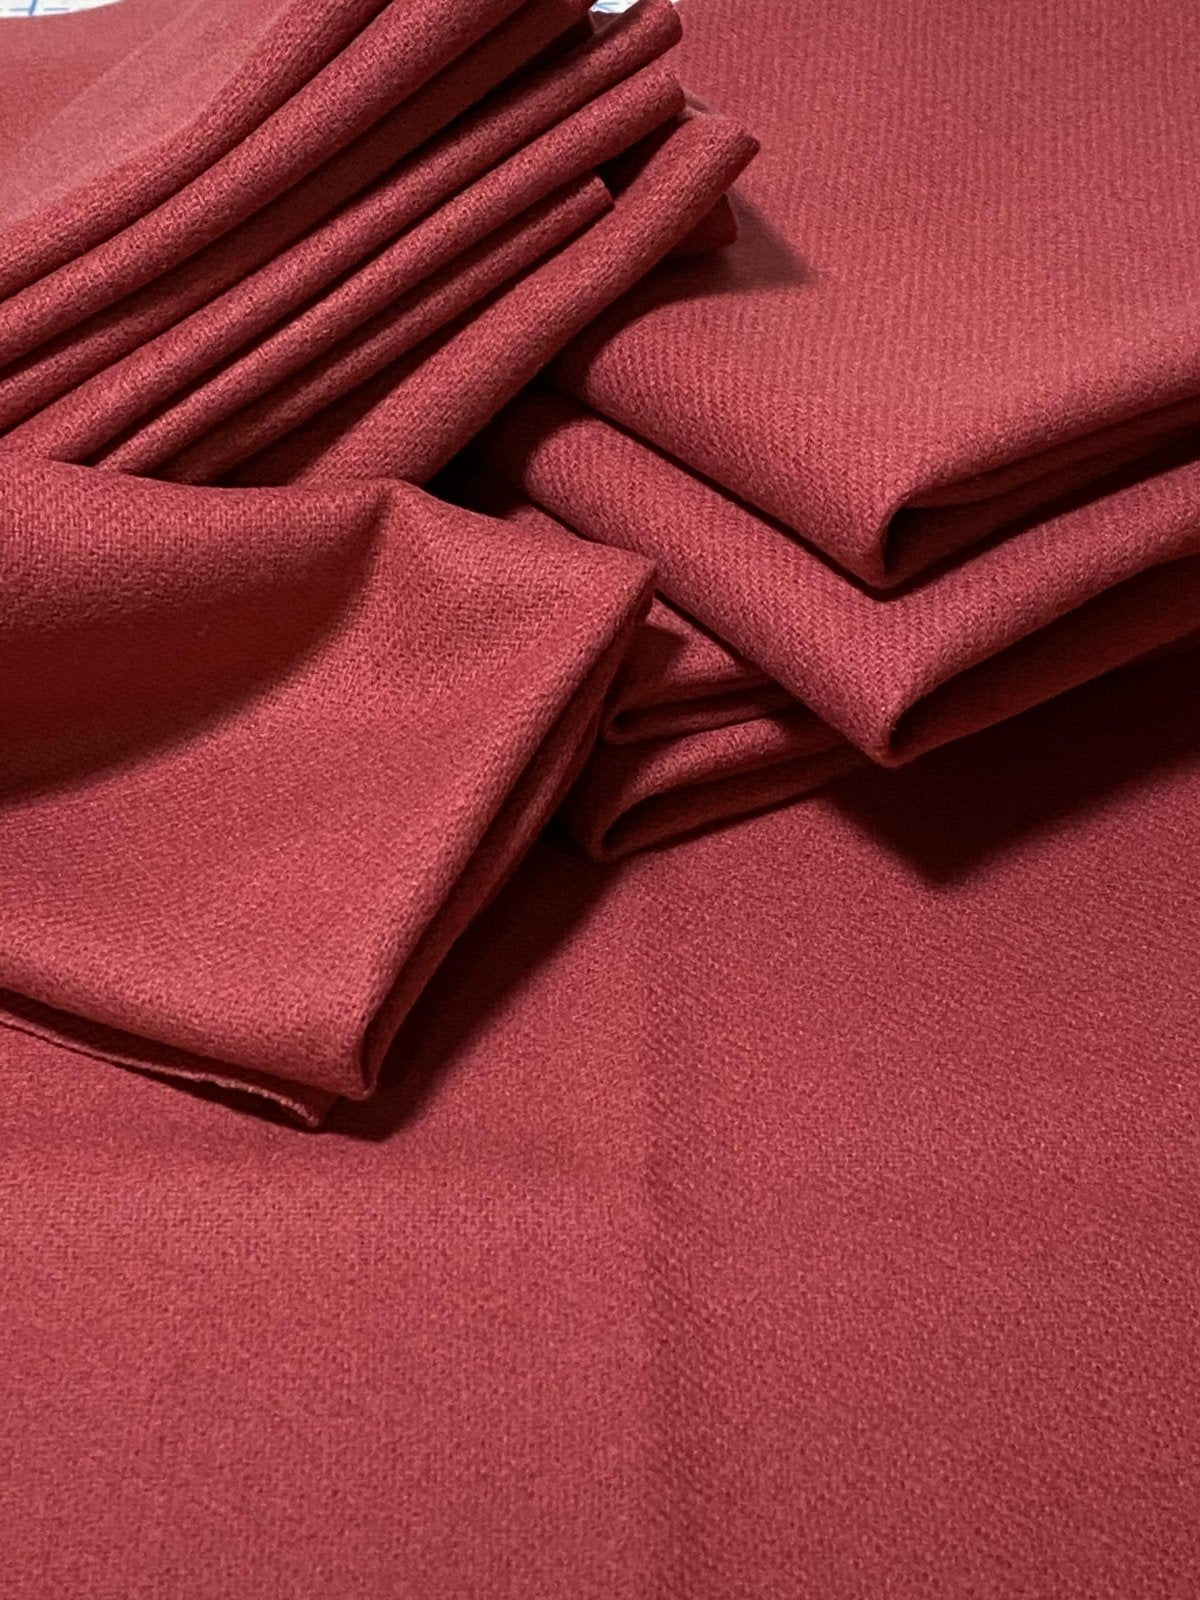 100% Wool Fabric - Rosy Bonbon